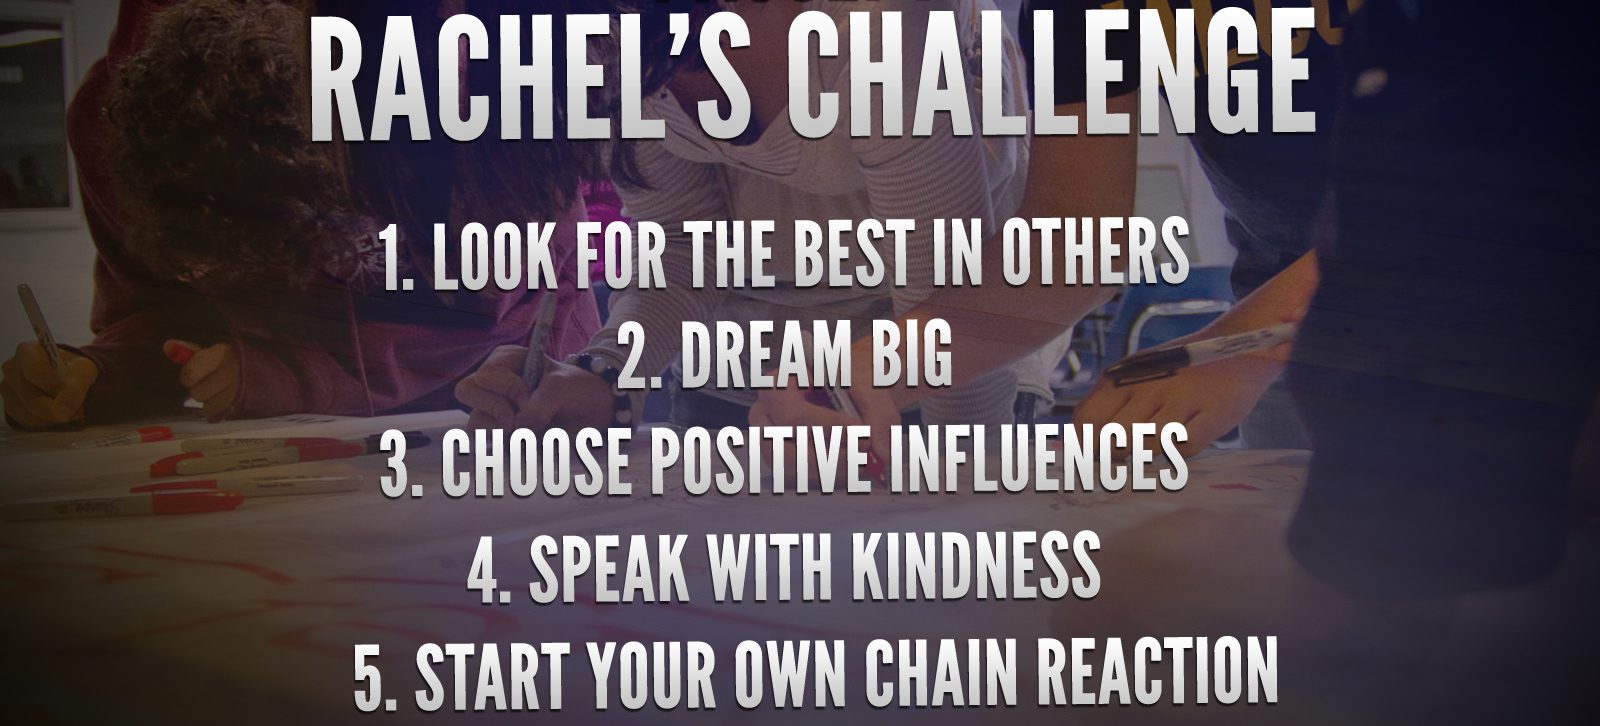 rachel's challenge steps.